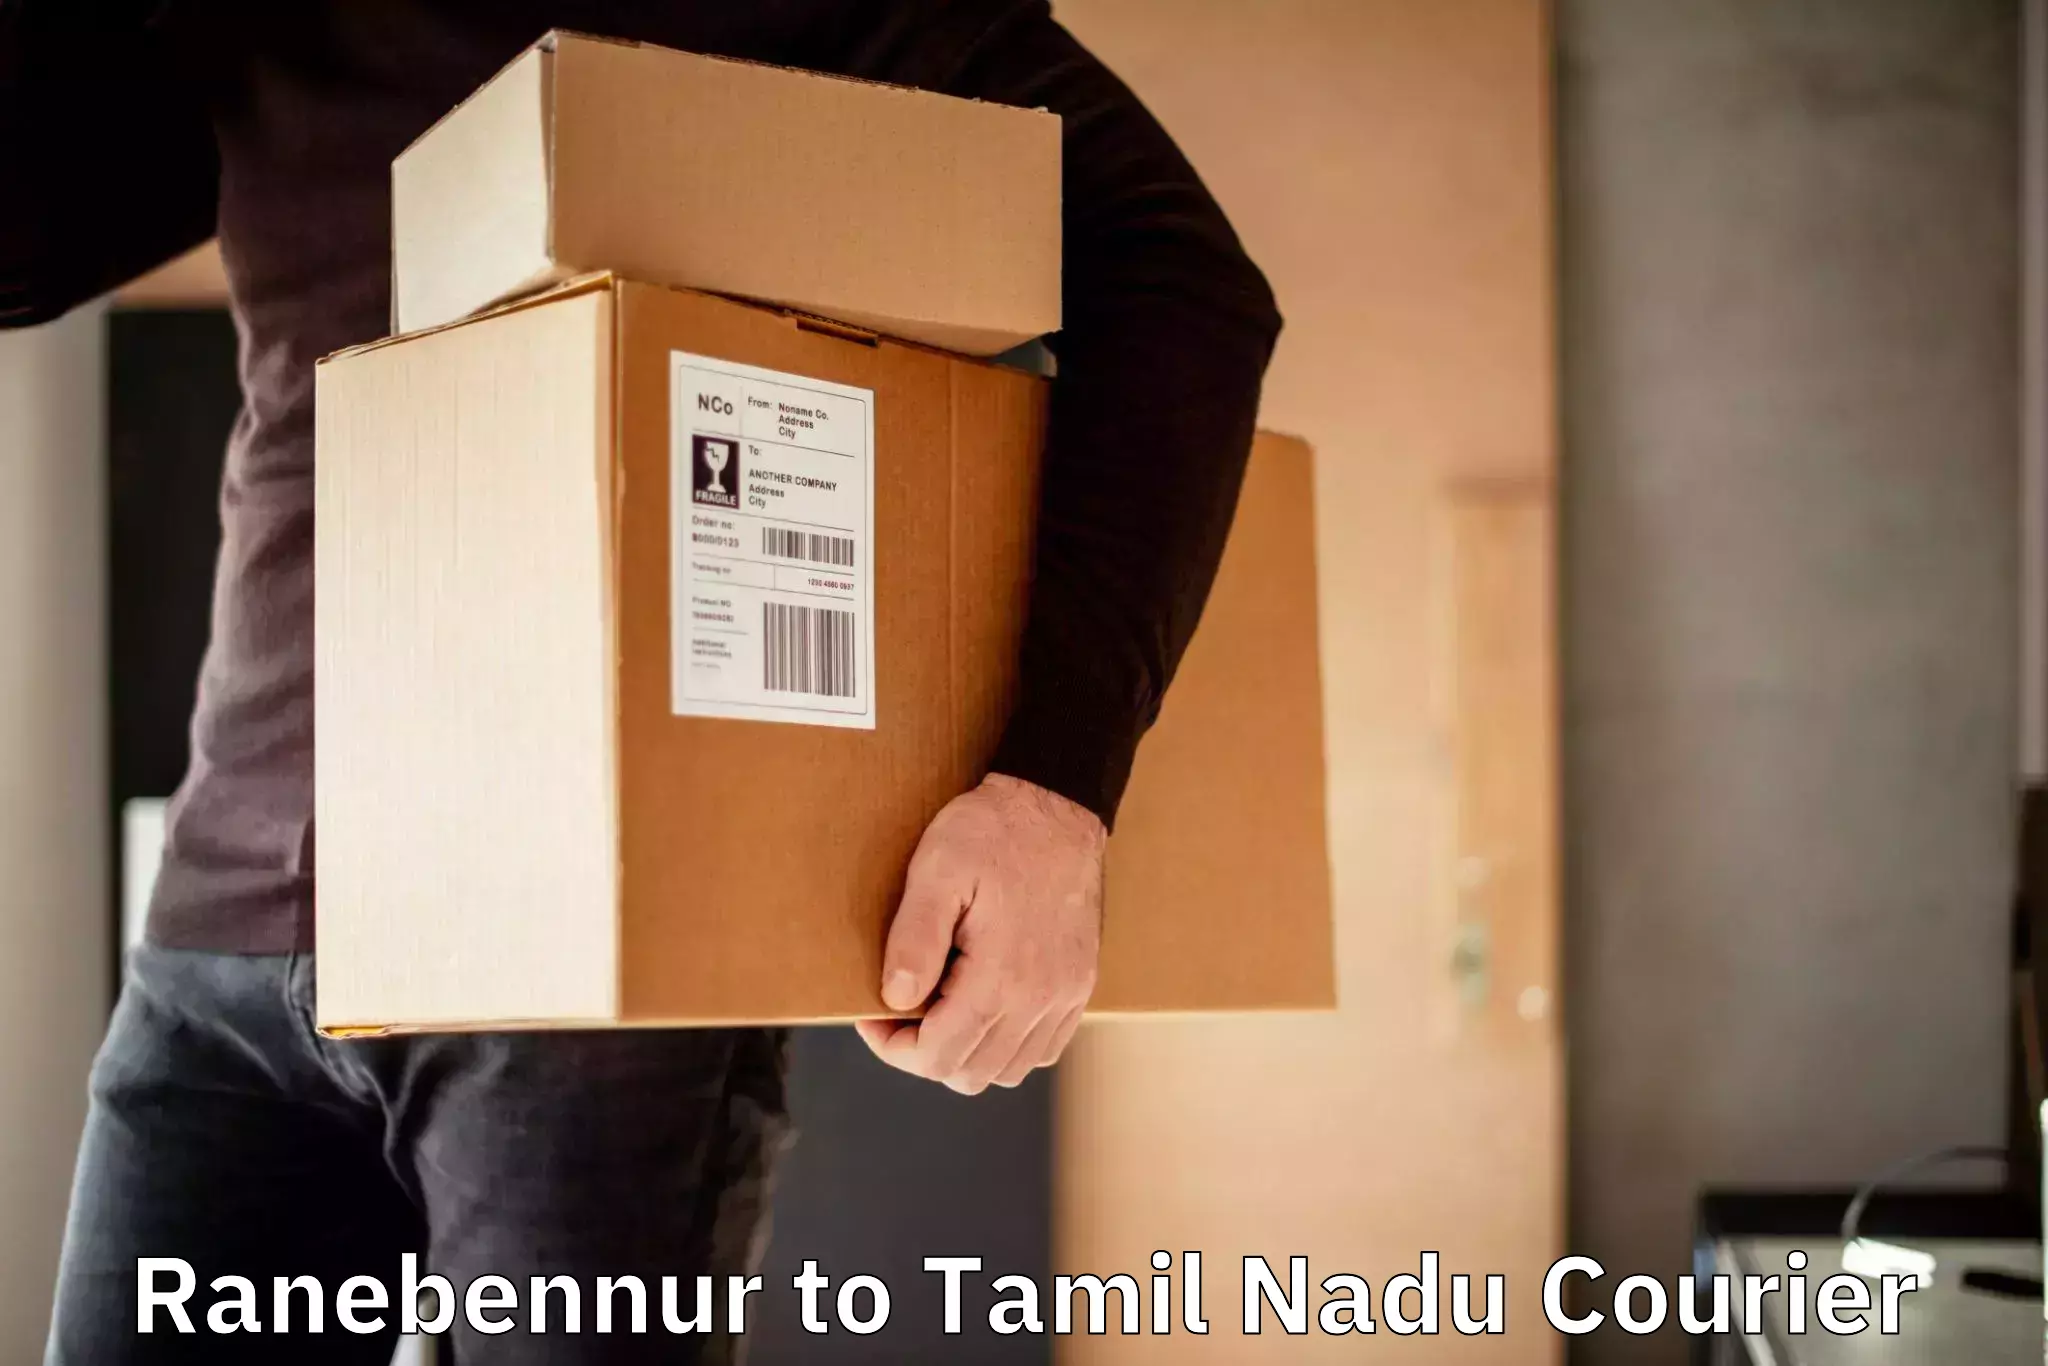 24-hour courier services Ranebennur to Tirunelveli